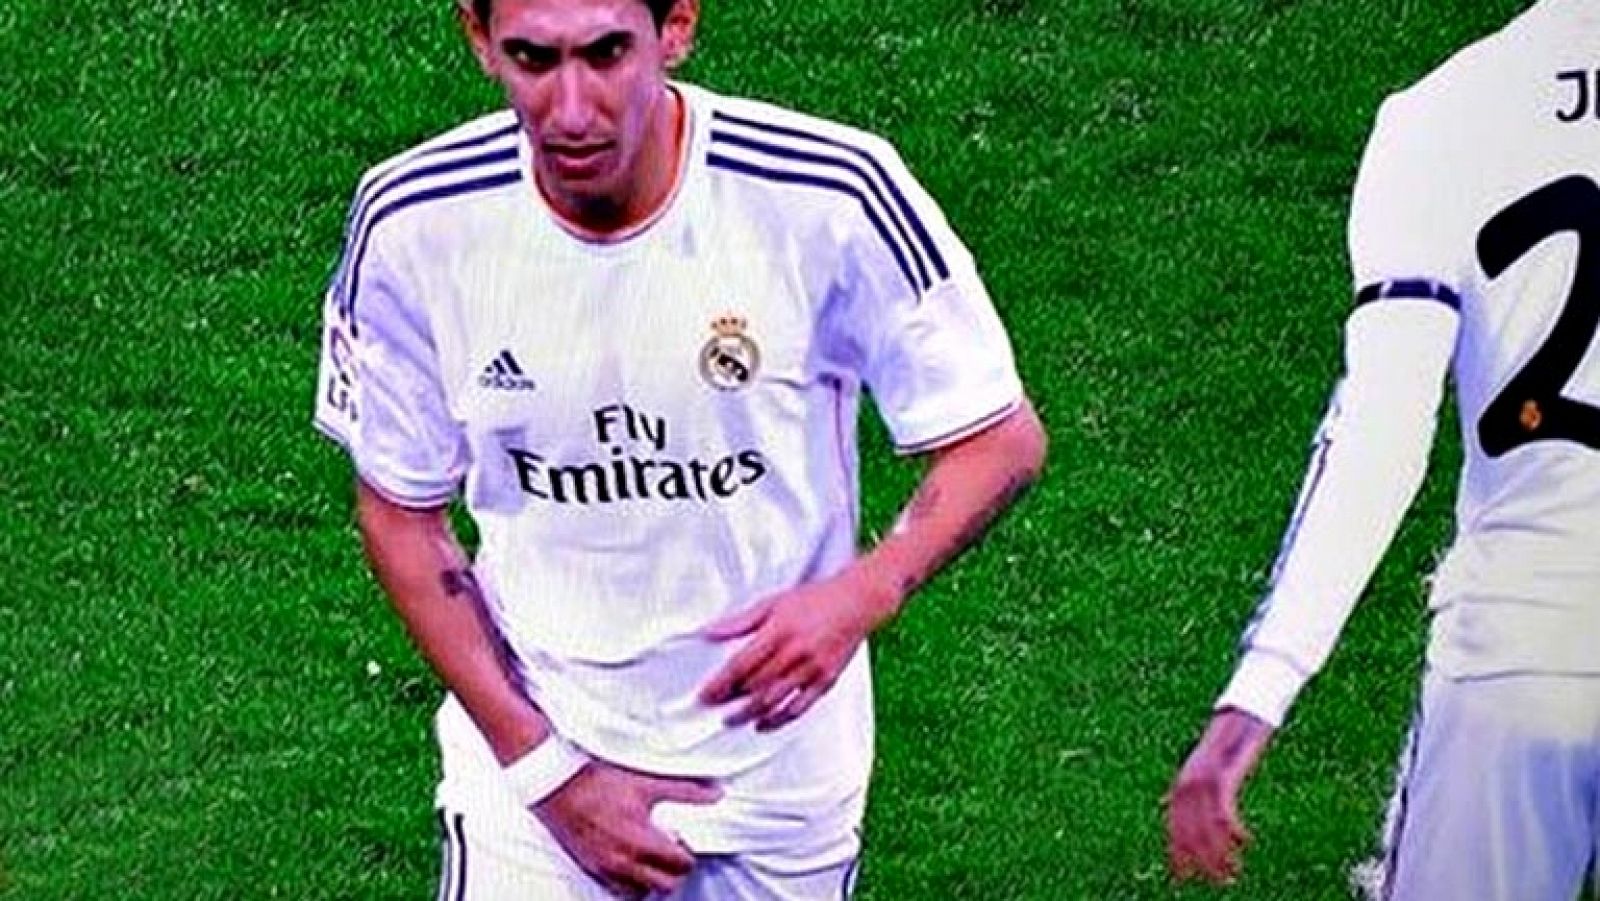 El mediocampista argentino del Real Madrid Ángel Di María ha asegurado que el polémico gesto que realizó durante el partido ante el Celta de Vigo cuando fue sustituido por el galés Gareth Bale, en medio de los silbidos de la grada, "no fue hacia nadie. Sólo me acomodé el pantalón".